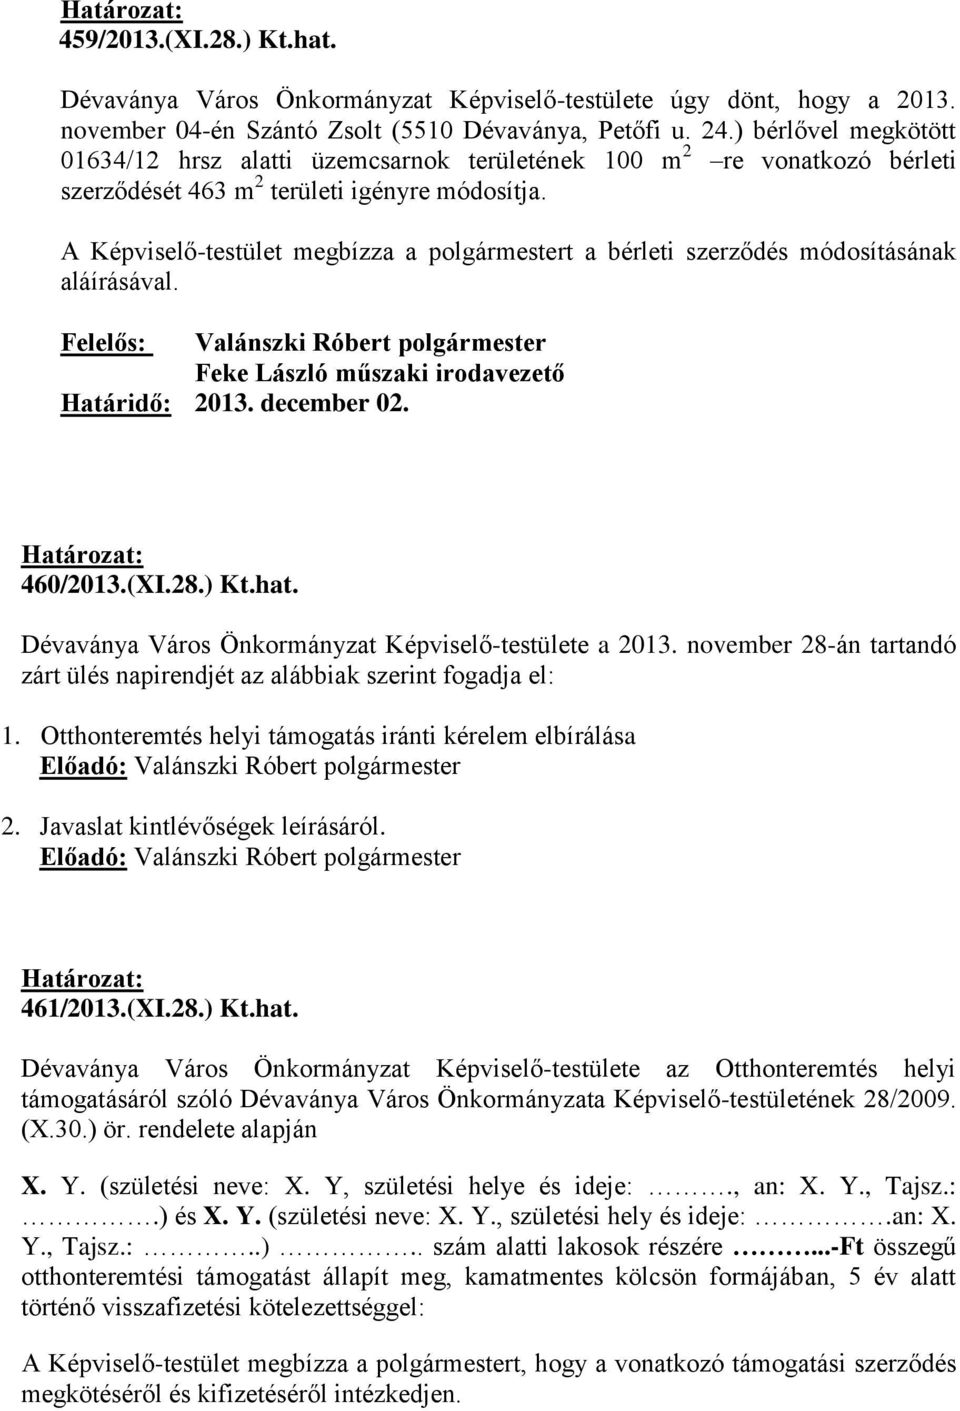 A Képviselő-testület megbízza a polgármestert a bérleti szerződés módosításának aláírásával. Feke László műszaki irodavezető Határidő: 2013. december 02. 460/2013.(XI.28.) Kt.hat.